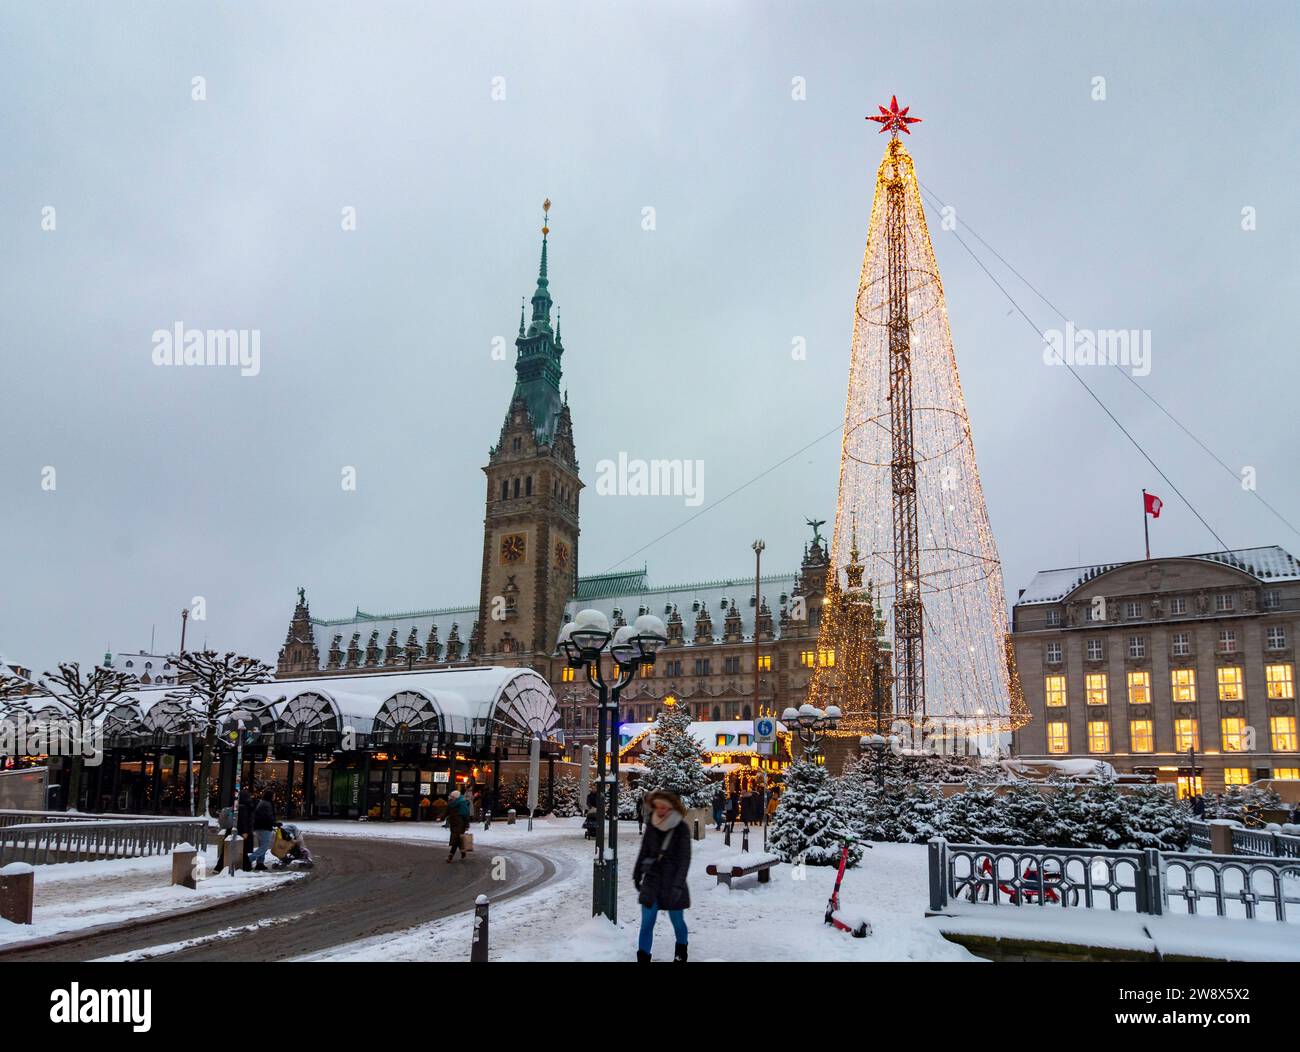 Hambourg : marché de Noël de Hambourg en face de la mairie, décoration de Noël, stands de vente, gens, chutes de neige en , Hambourg, Allemagne Banque D'Images